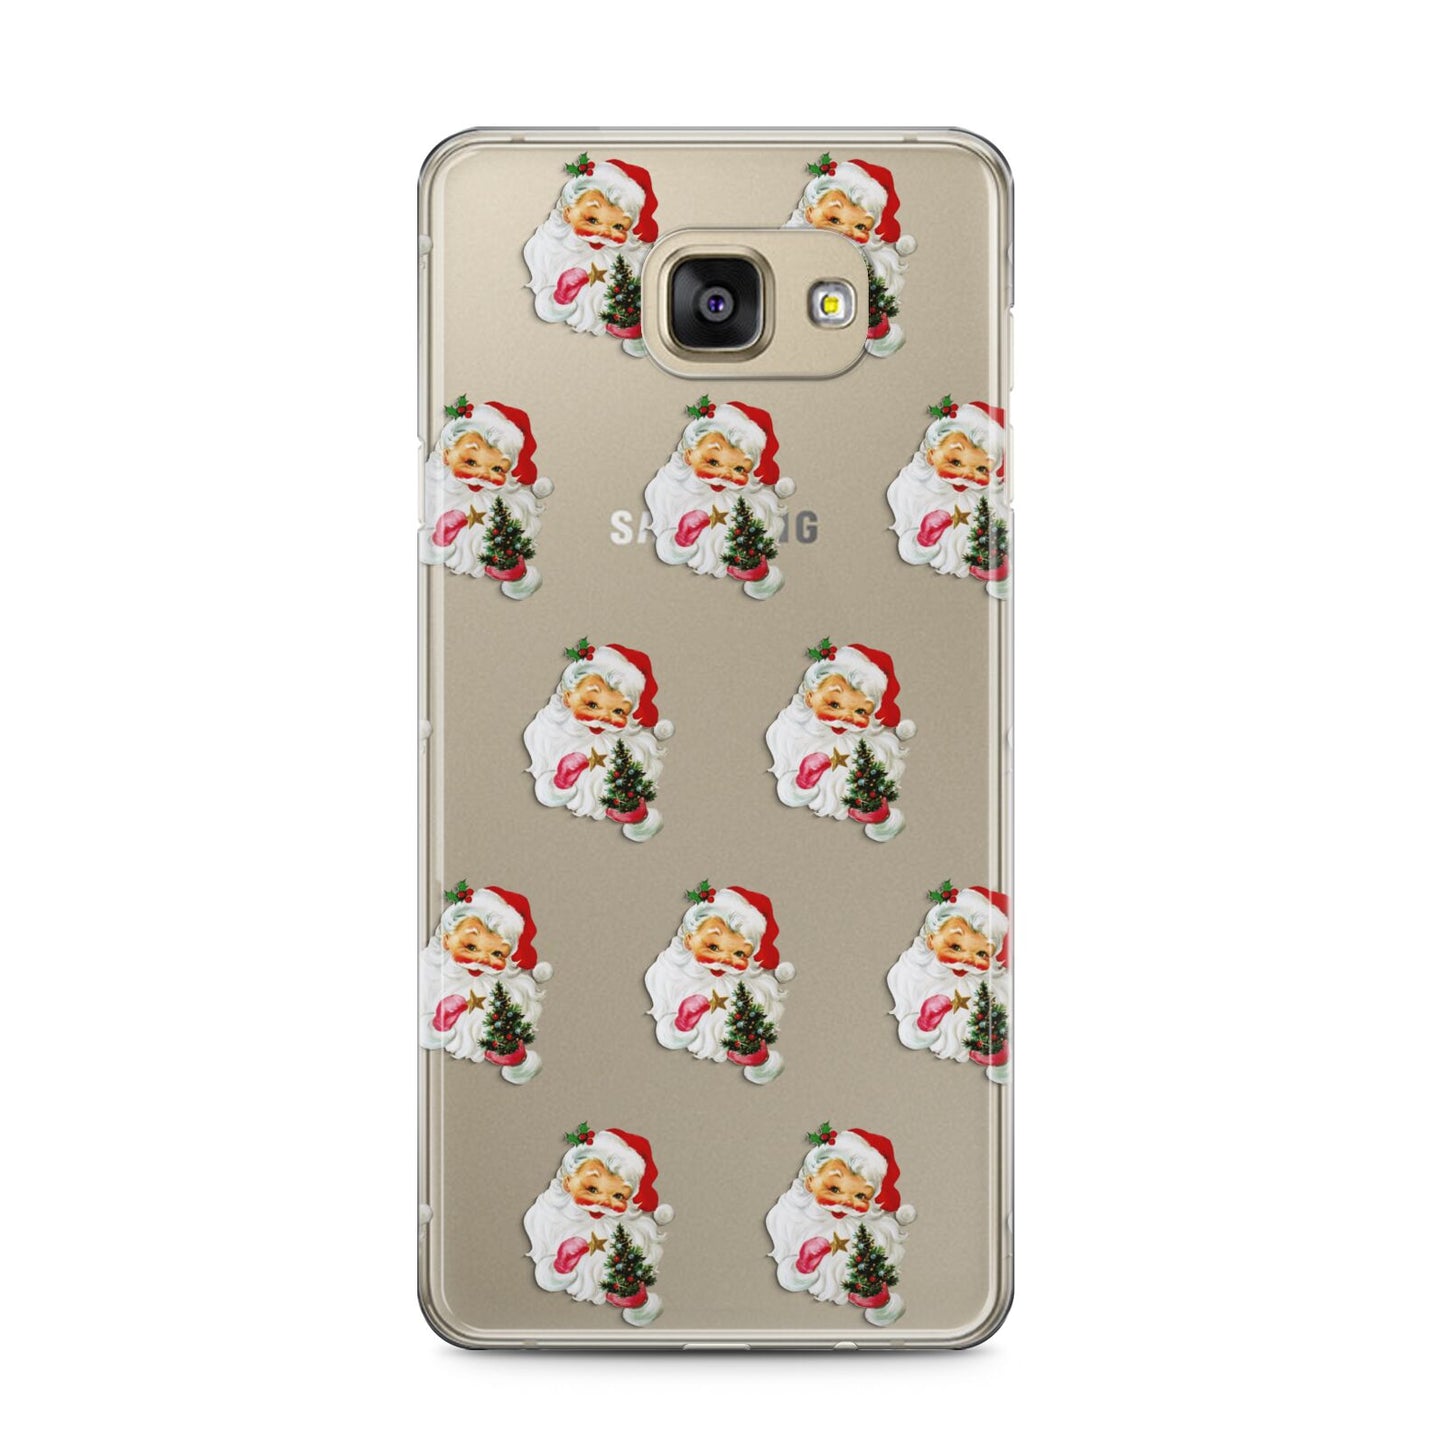 Retro Santa Face Samsung Galaxy A5 2016 Case on gold phone